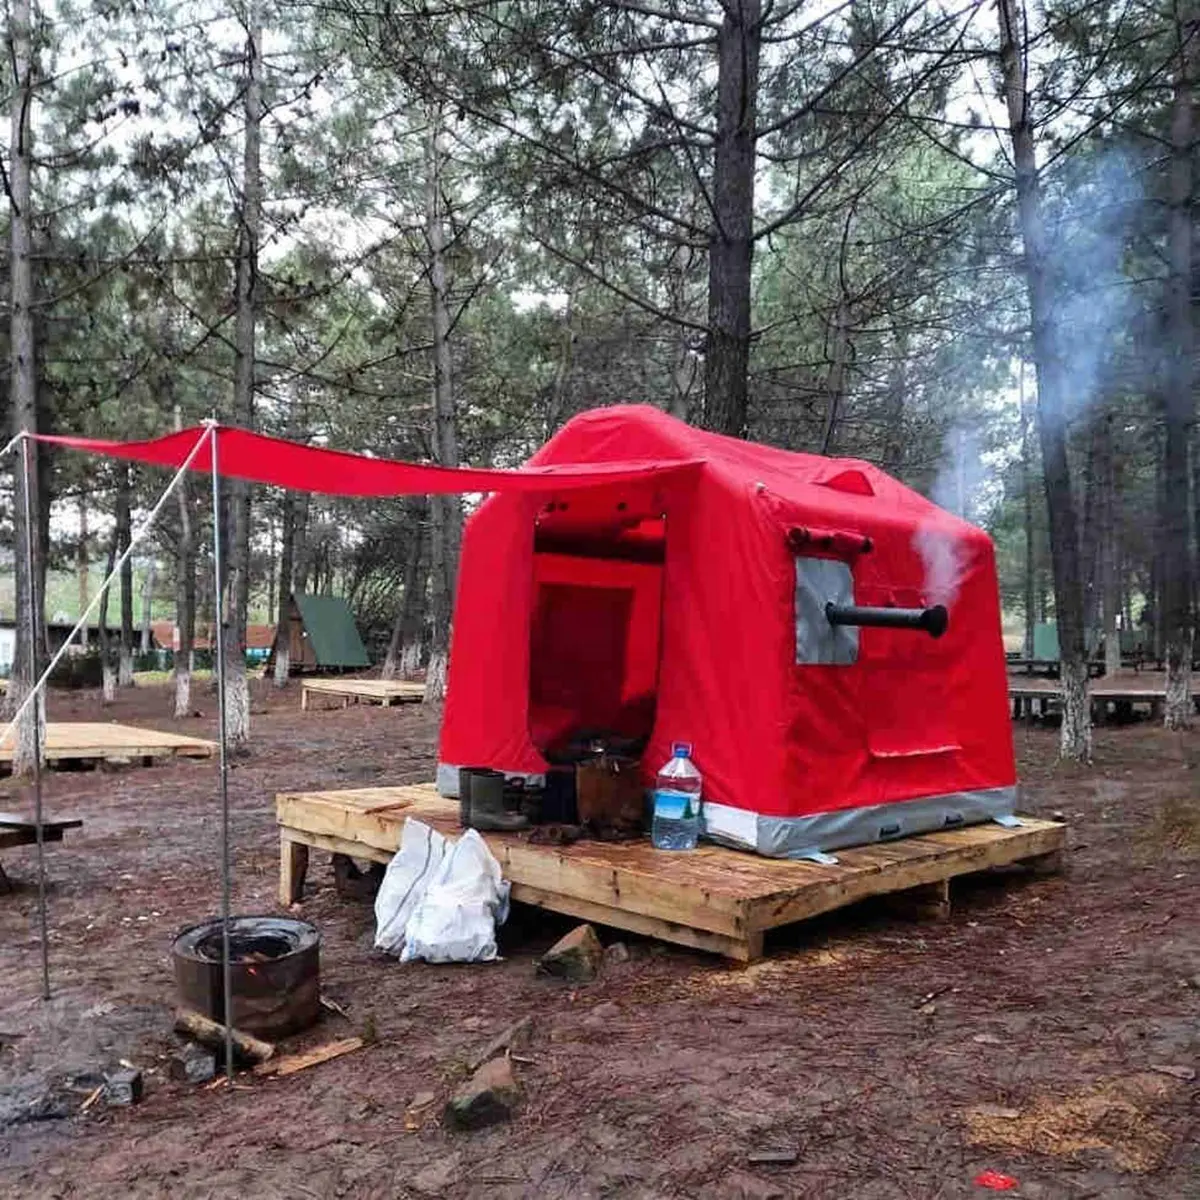 حار بيع عالية الجودة جلامبينج خيمة مخصص متعددة الأشخاص كبيرة للماء خيمة منفوخة بالهواء في الهواء الطلق خيمة تخييم قابلة للنفخ للبيع